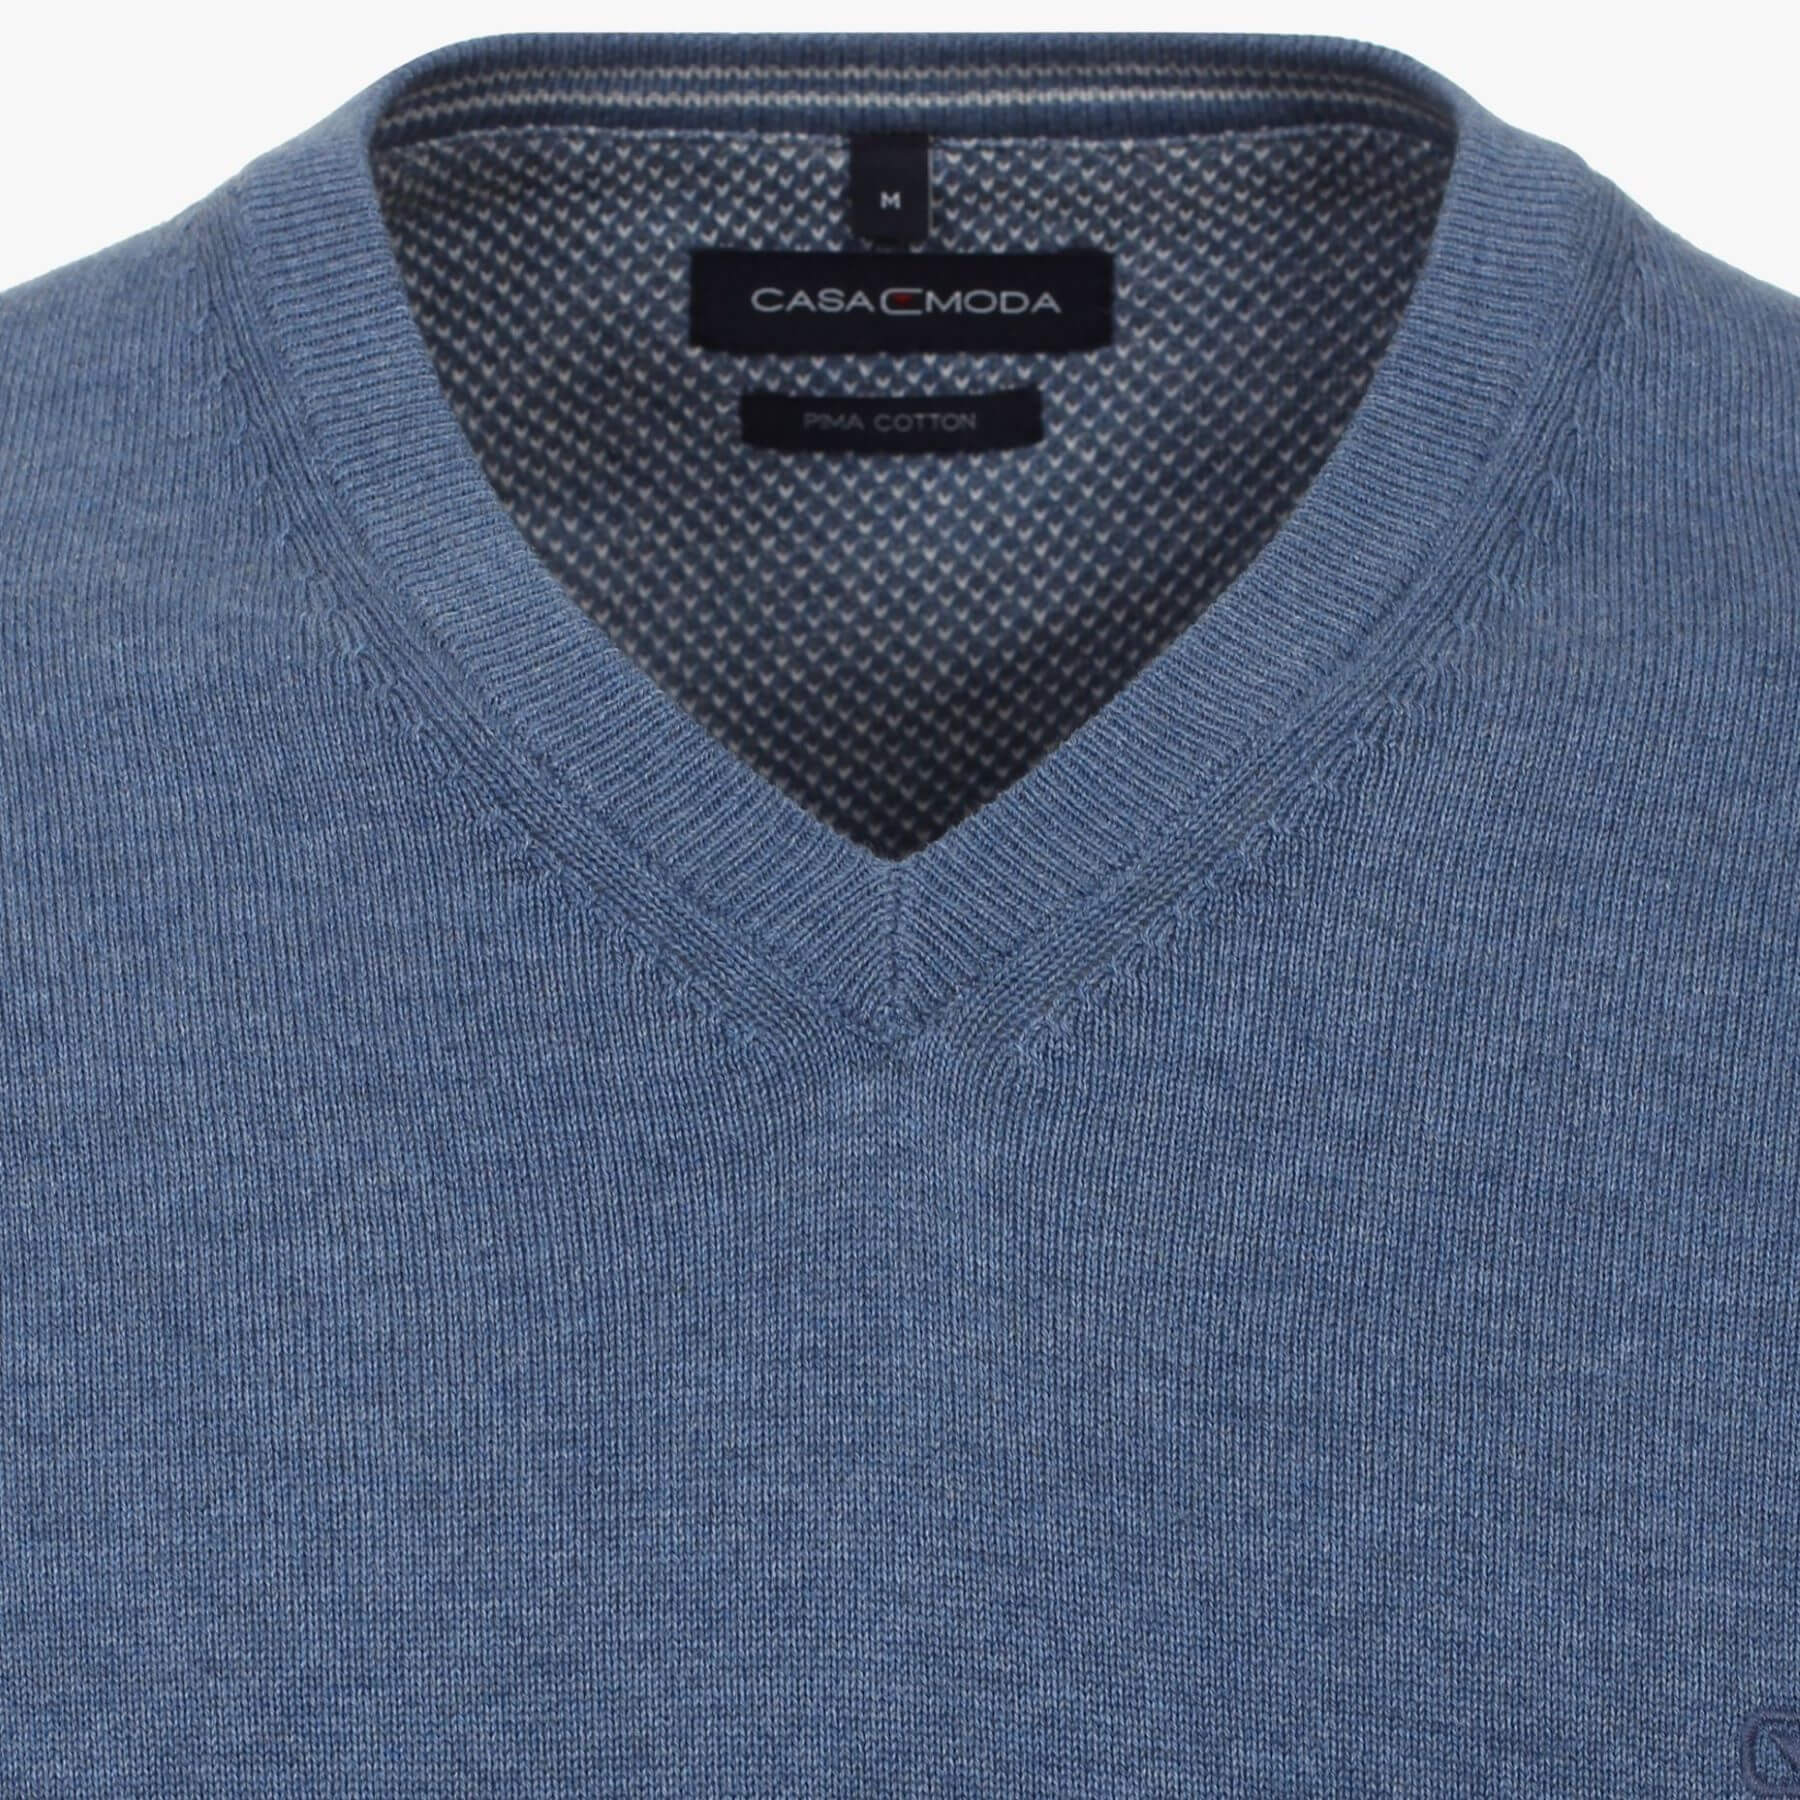 Пуловер мужской Casamoda 004430-199 цвет Лунный синий